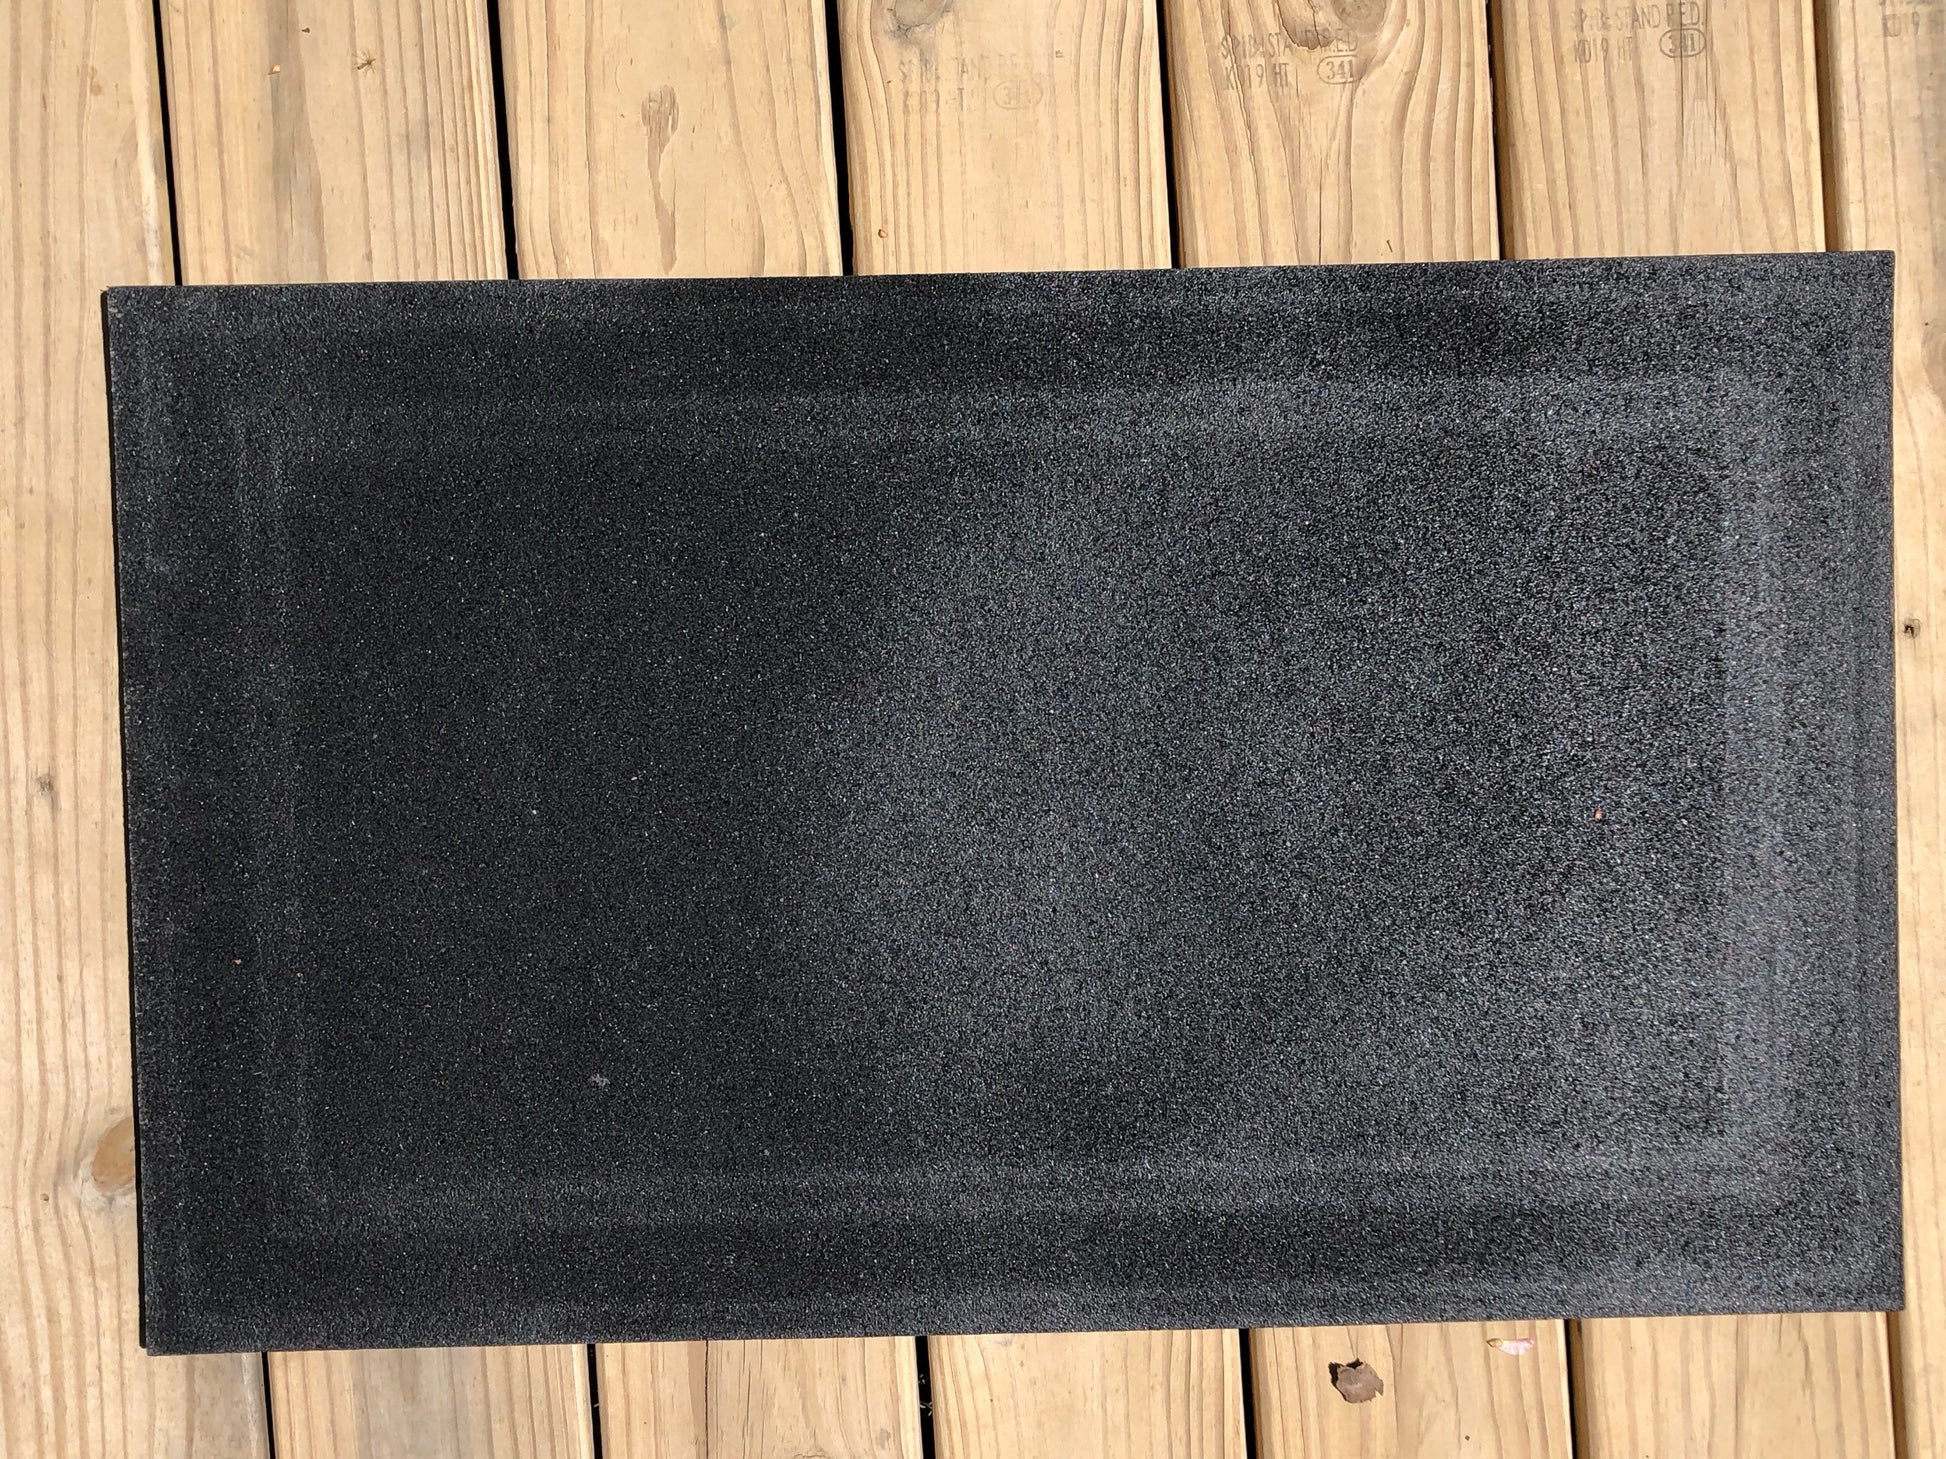 Personalized Outdoor Mat, Customized front door rug, Outdoor mat, Pers –  Bair Prints